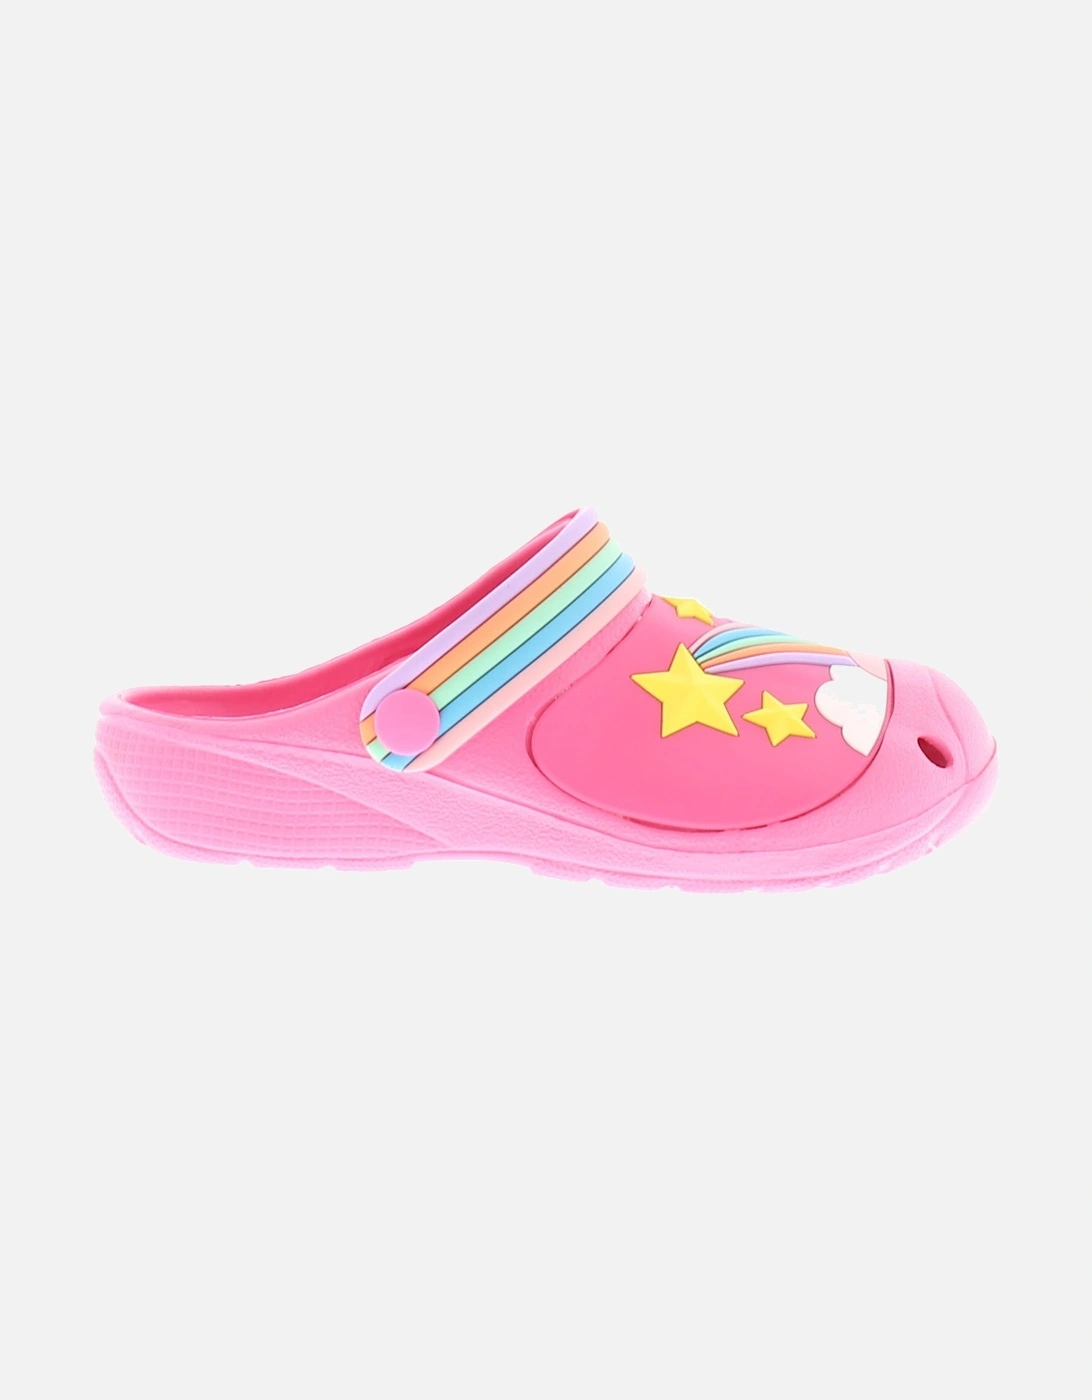 Girls Sandals Clogs Beach Dream pink UK Size